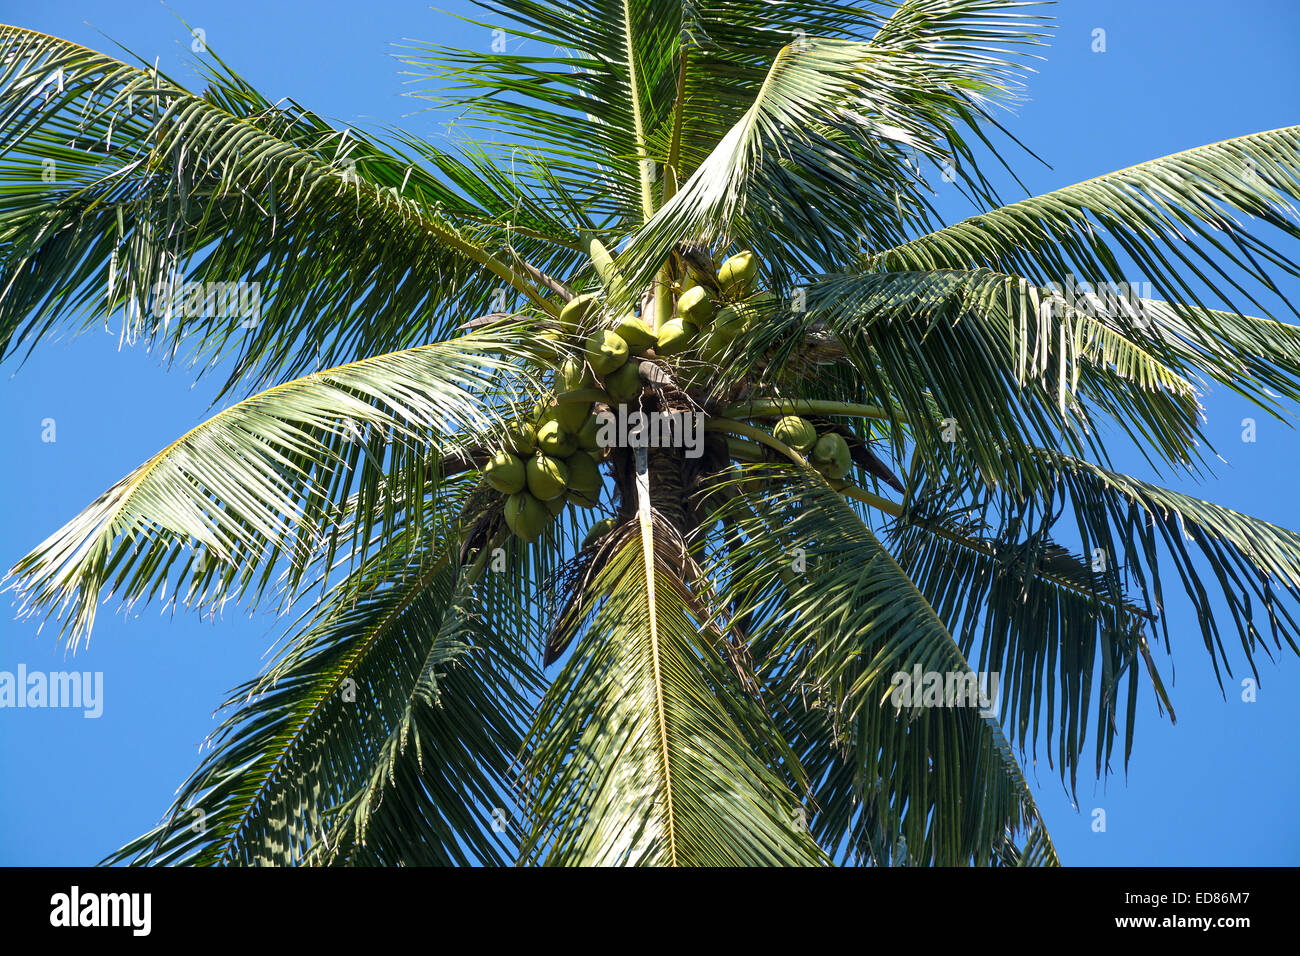 Re Noci di cocco nella struttura ad albero closeup, crescendo in un giardino nel sud della provincia, Sri Lanka, in Asia. Foto Stock